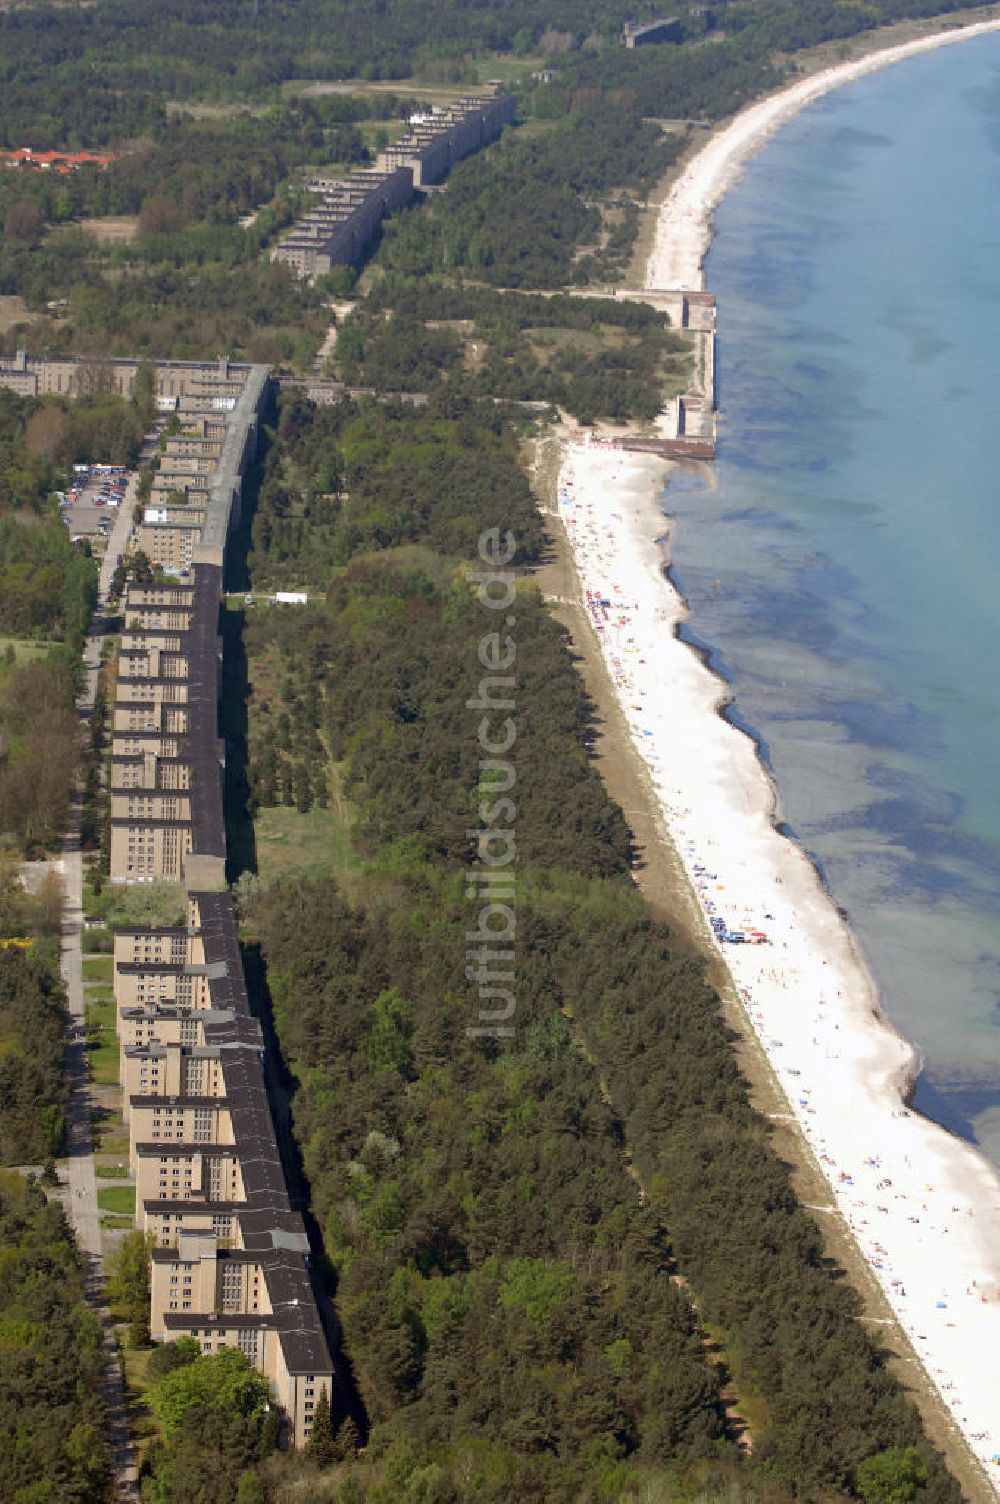 Luftbild Ostseebad Prora - Blick auf den ?Koloss von Prora? die 18m-Modellanlage KdF-Seebad Prora